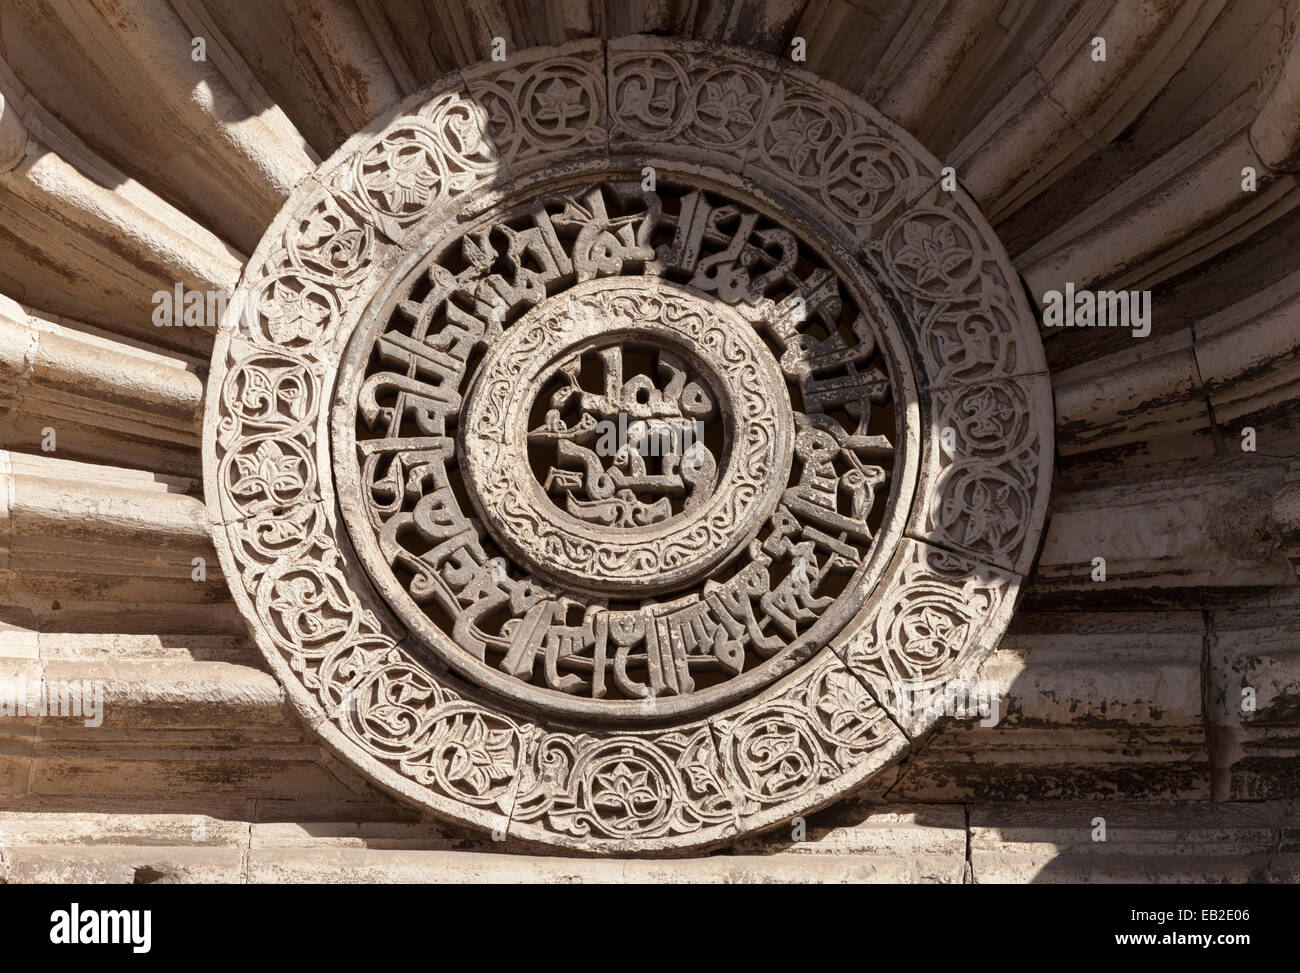 Dettaglio del medaglione scolpita sulla facciata della moschea di al-Aqmar, Il Cairo, Egitto Foto Stock